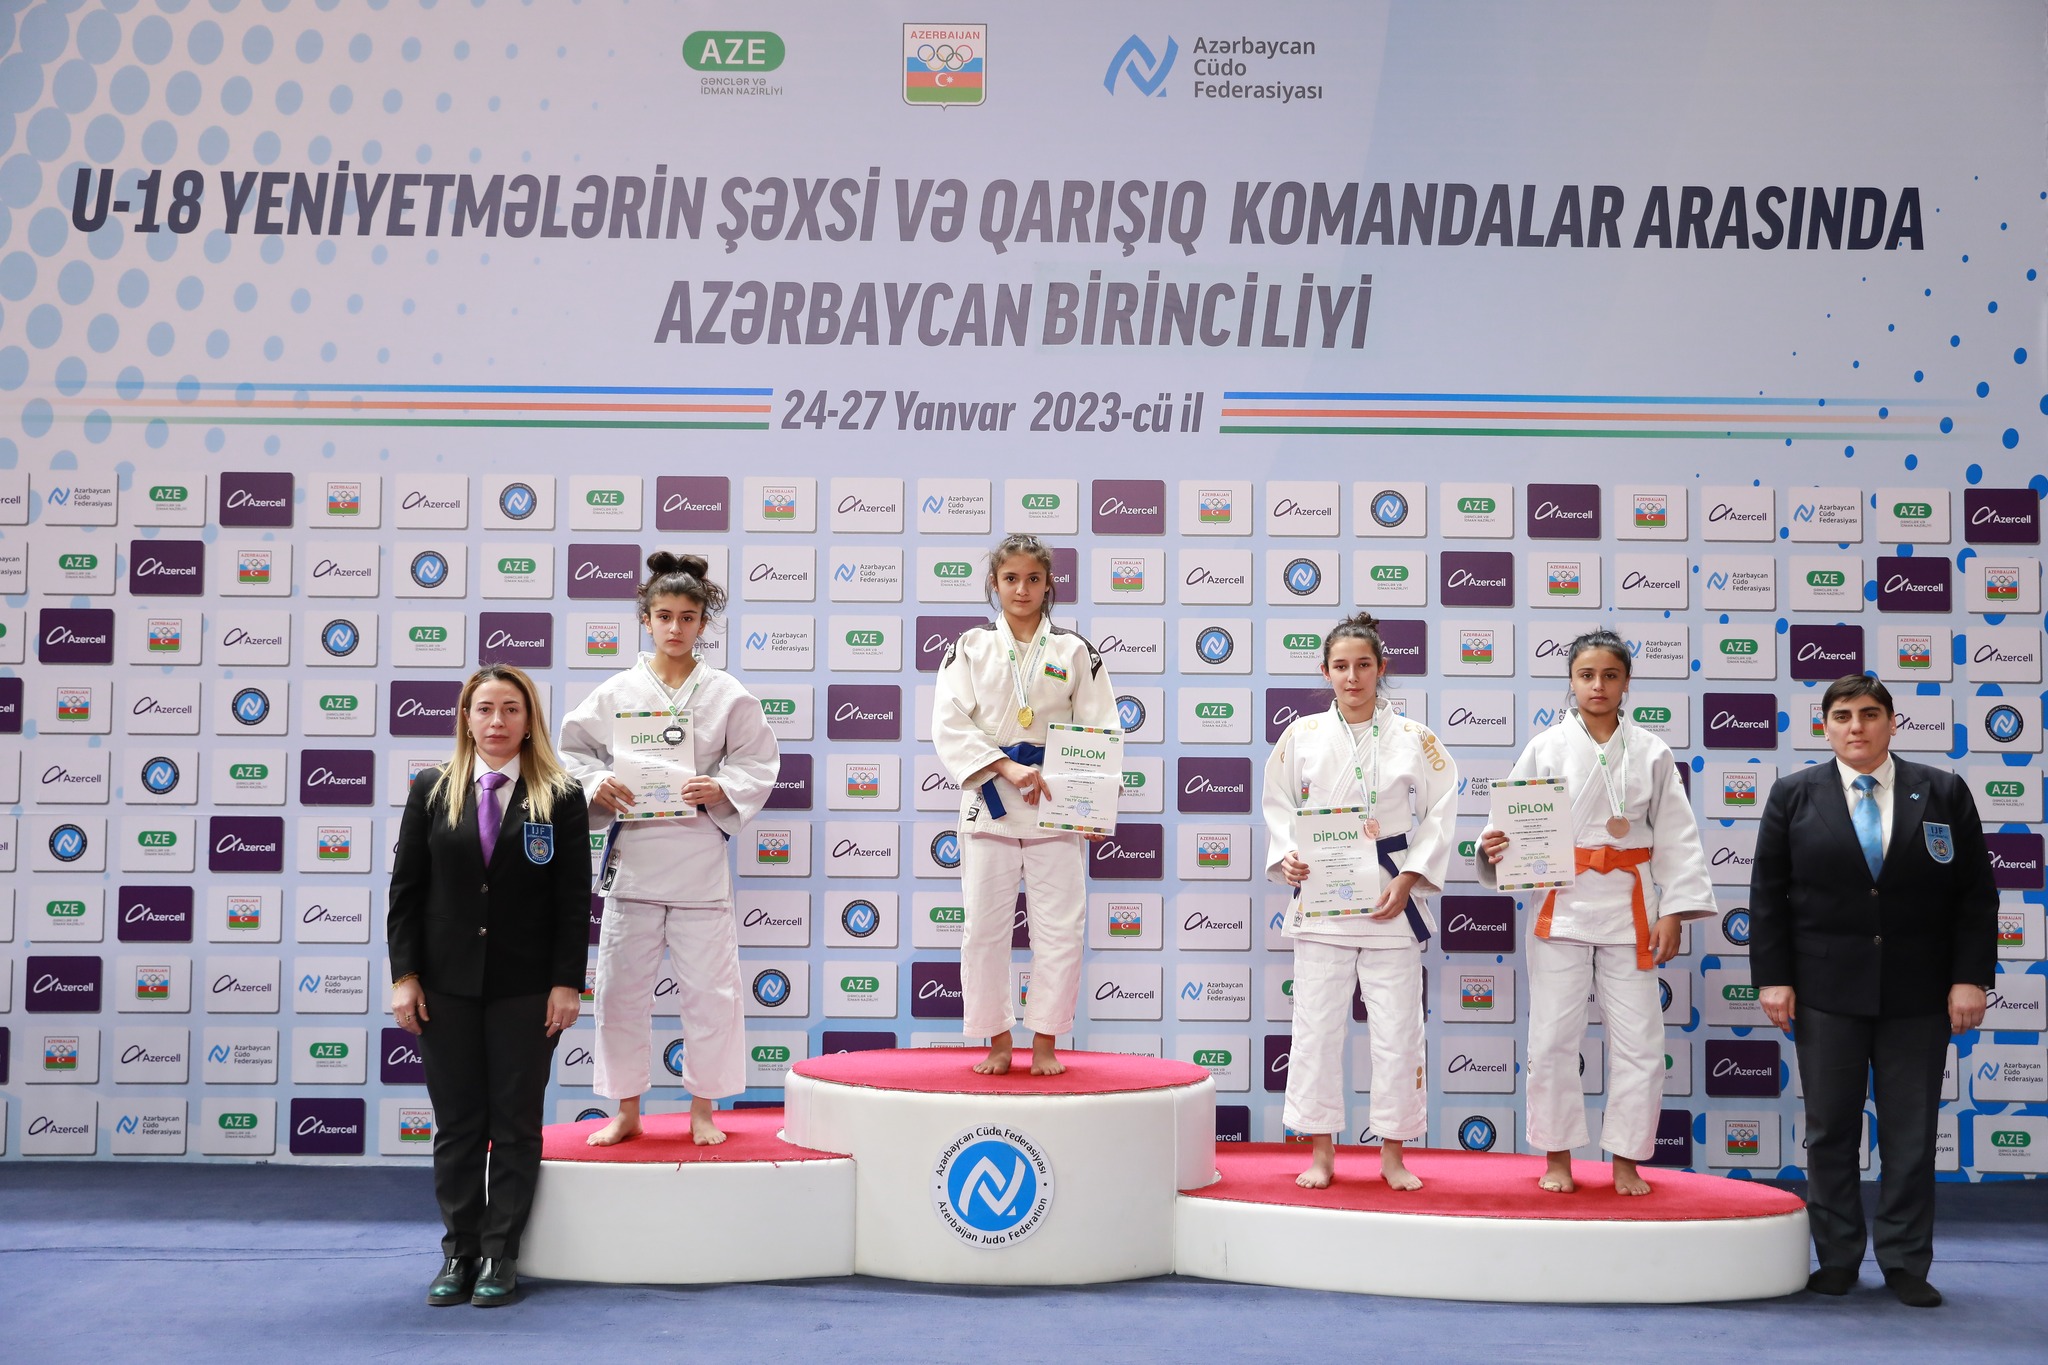 img/posts/judo-club-2012nin-yetirmeleri-azerbaycan-birinciliyini-2-burunc-medalla-basa-vurdular-2023-01-28-145834/1.jpg